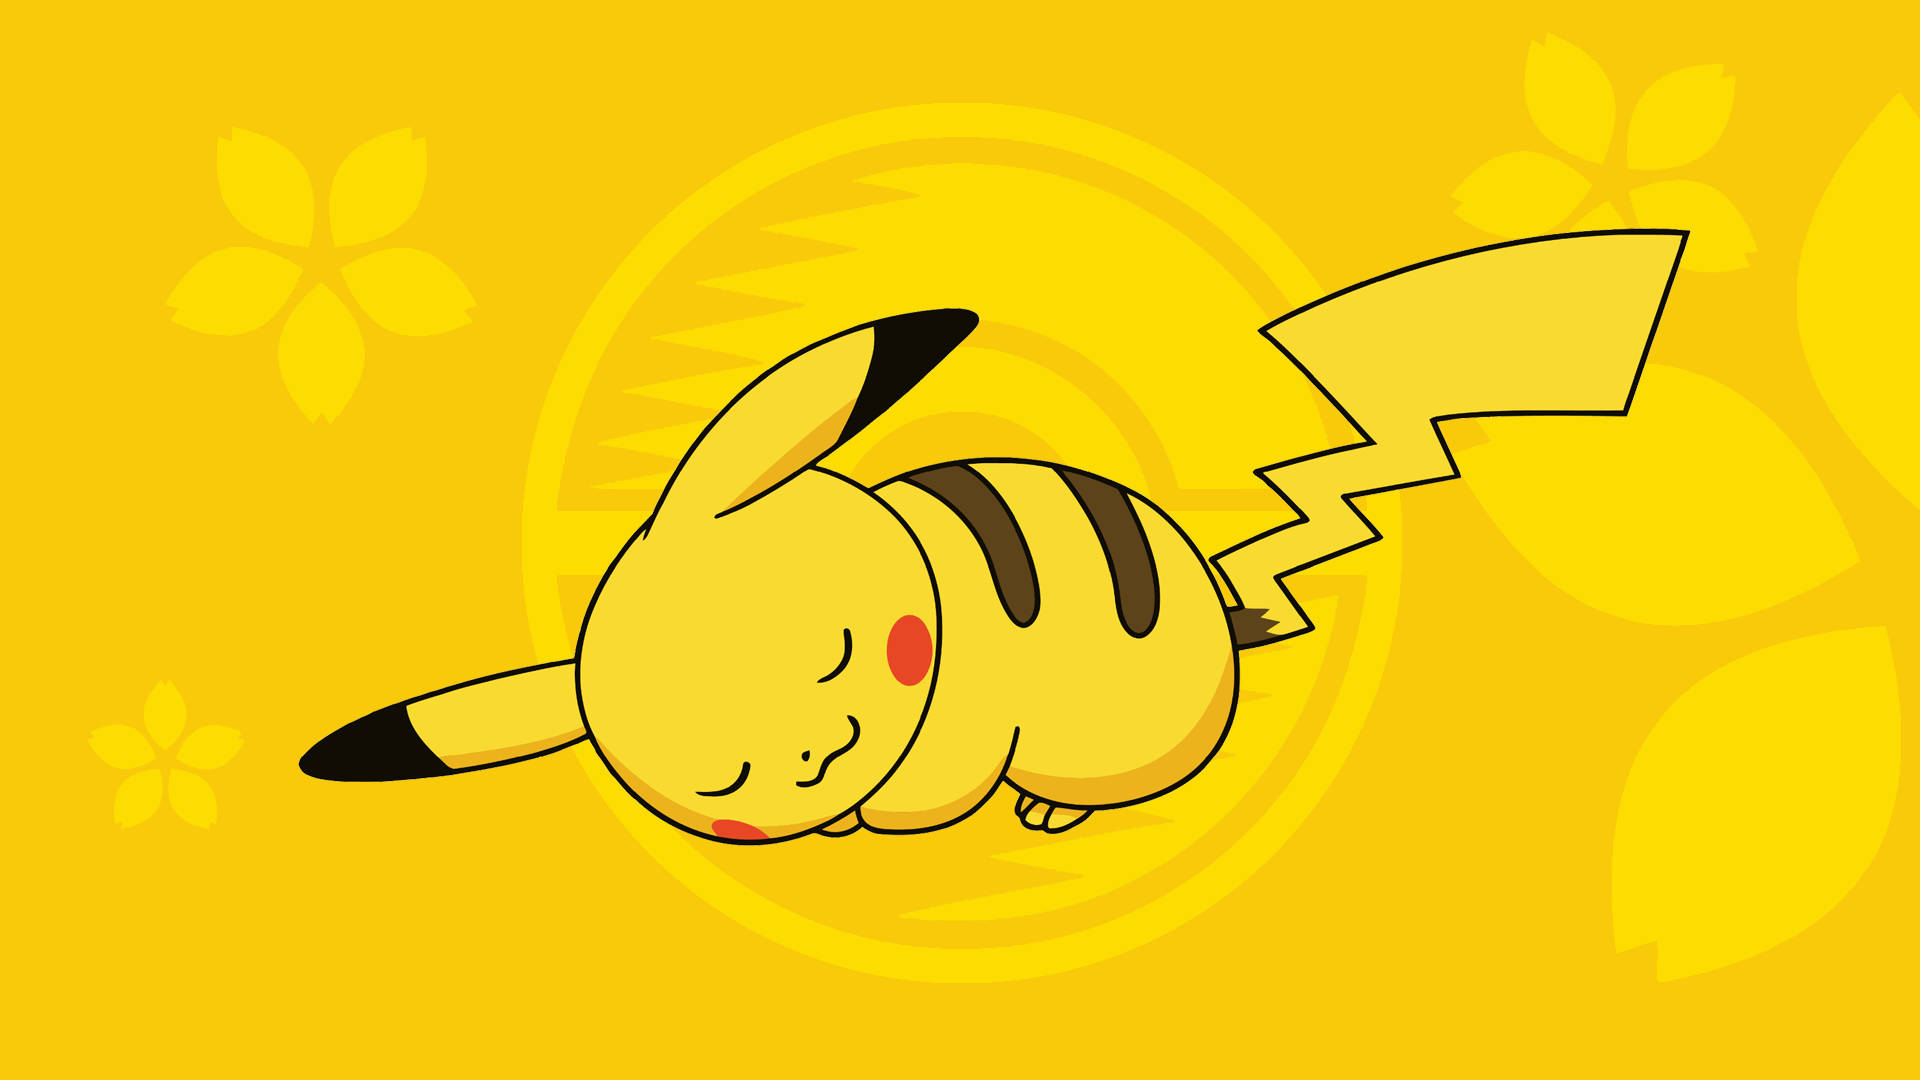 Pikachu 3d Peaceful Electric Type Pokémon